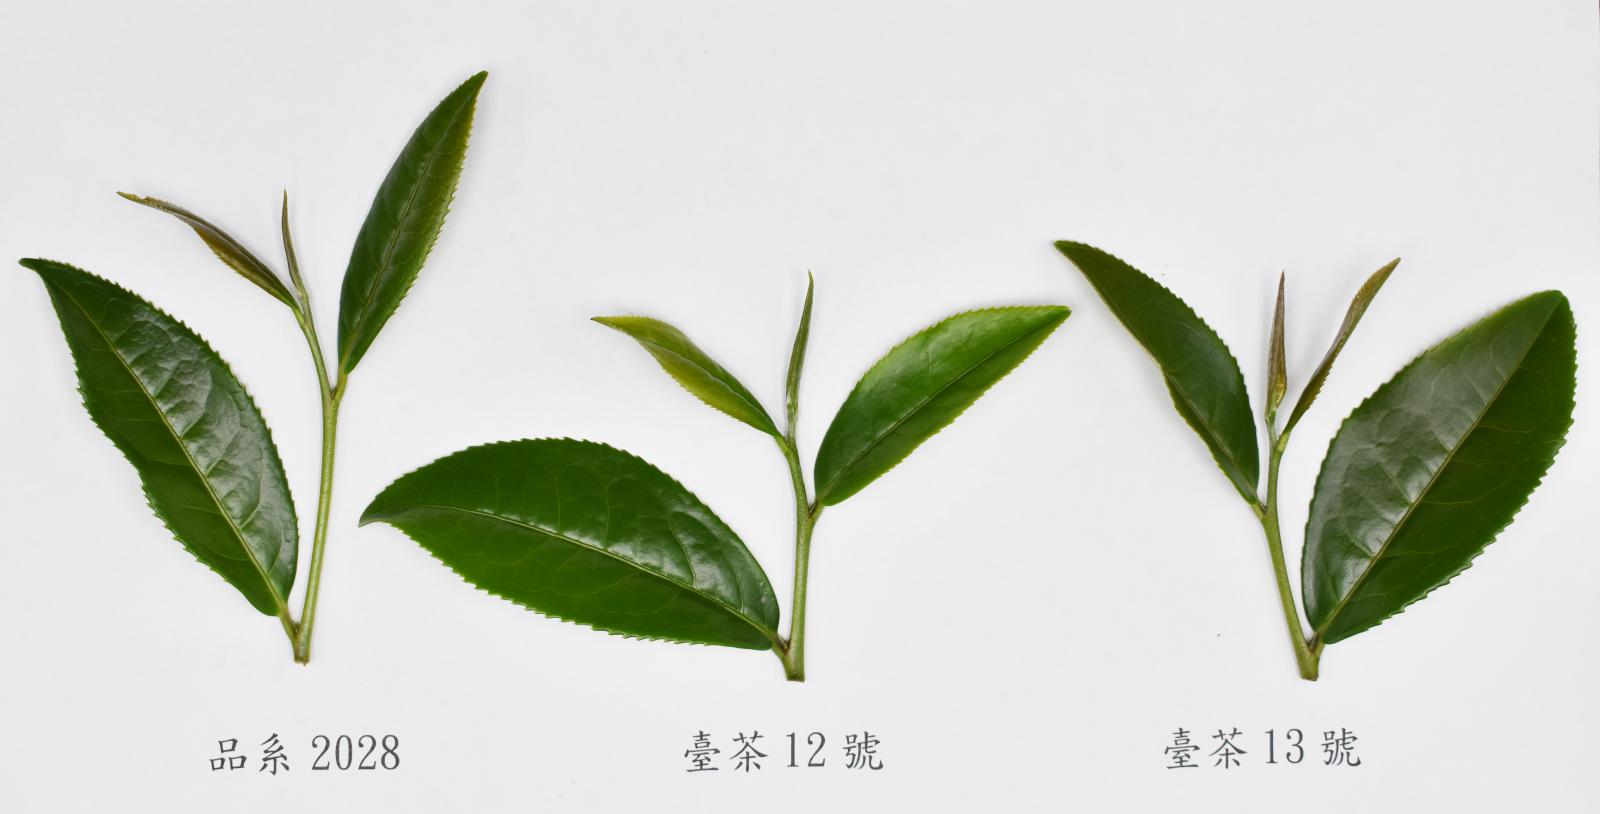 三個茶樹品種（系）之茶芽圖，由左而右分別為品系2028、臺茶12號與臺茶13號